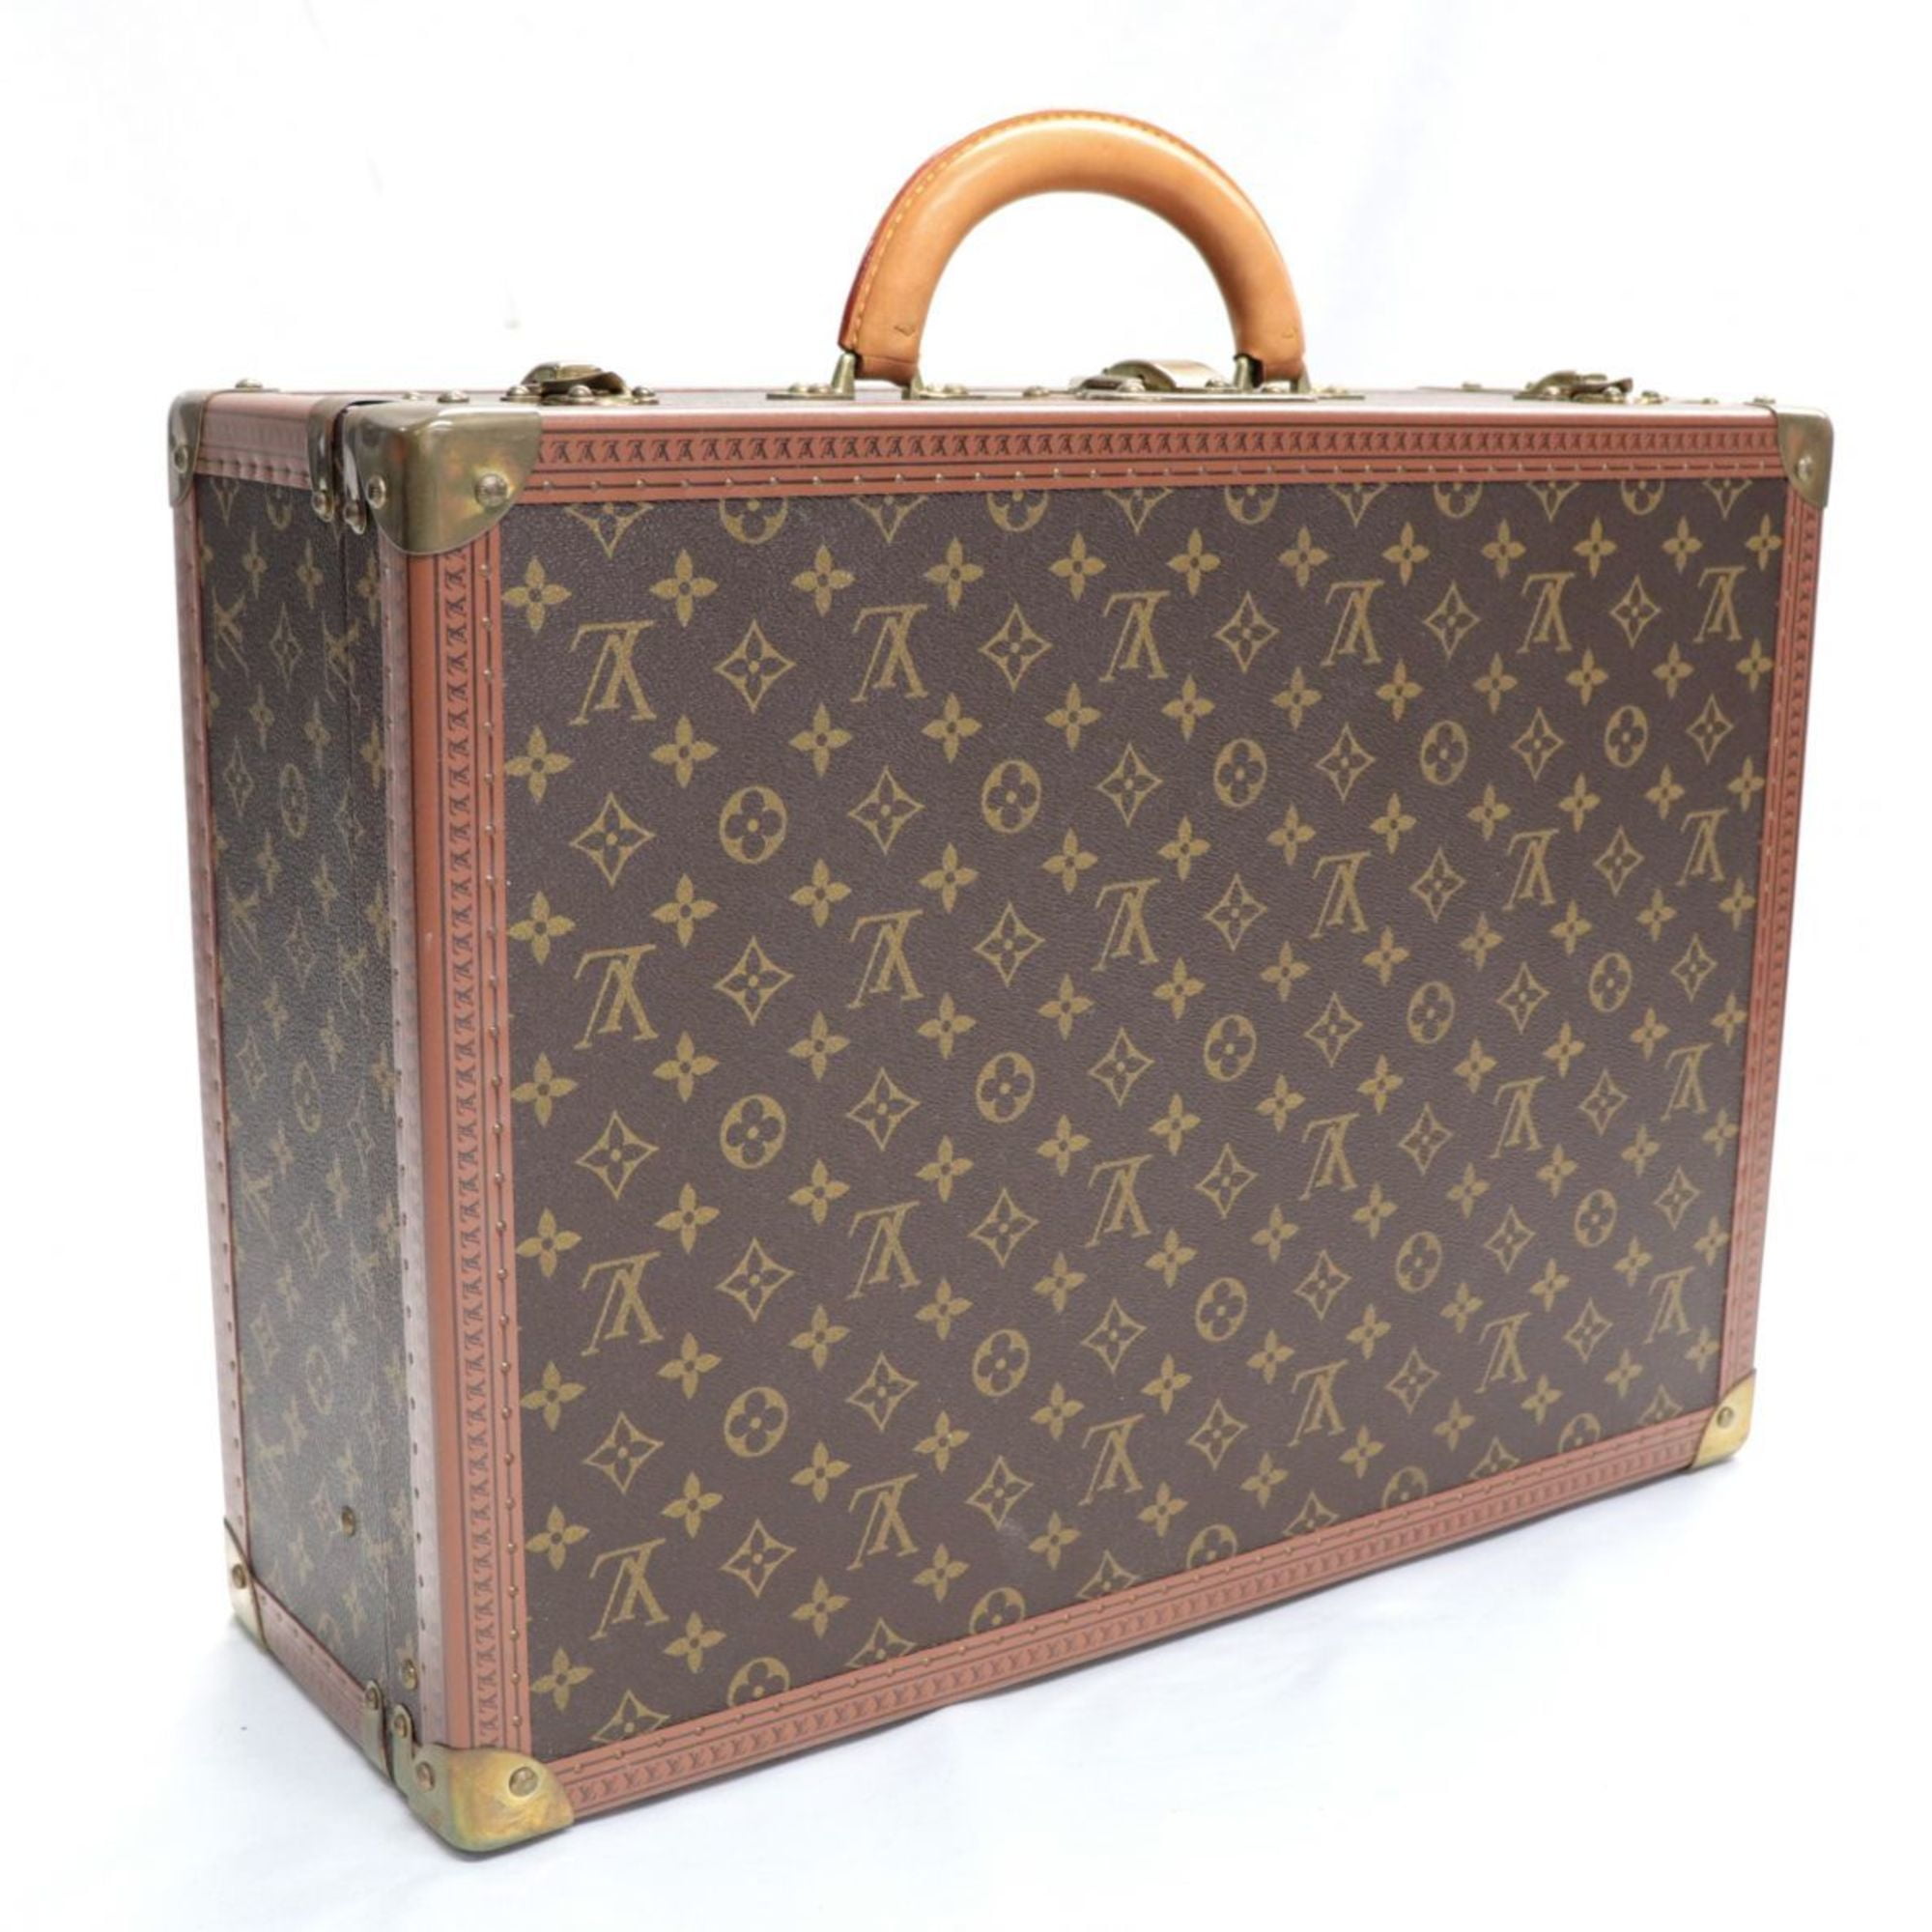 Authenticated used Louis Vuitton Cotoville 40 Monogram Trunk Hard Case Attache Bag Brown Gold Hardware Louis Vuitton, Women's, Size: (HxWxD): 32cm x